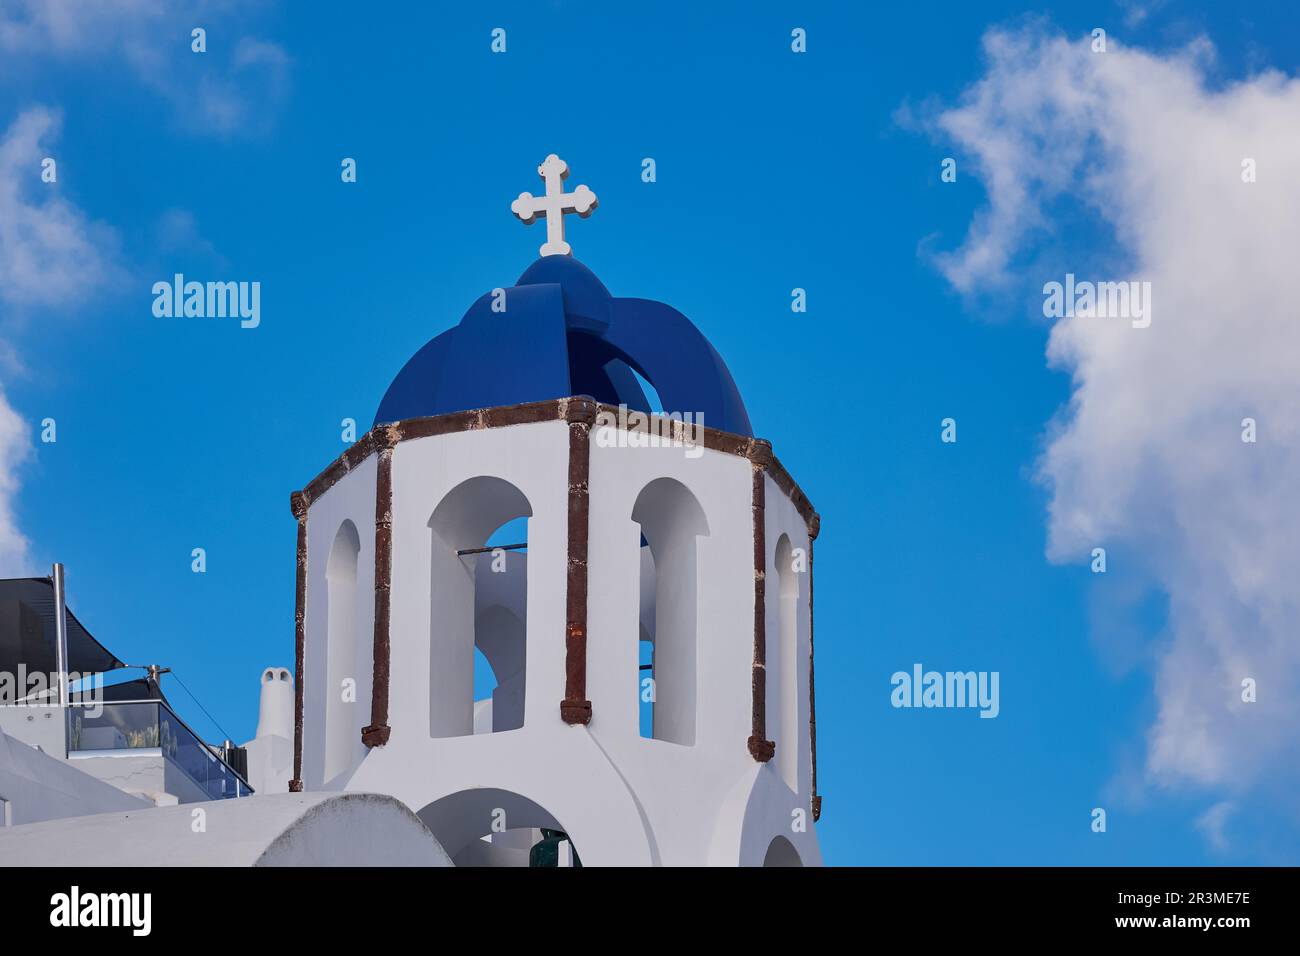 Die berühmte Blaue Kuppelkirche Santorin mit Blick auf Caldera - Oia Village, Santorini Insel, Griechenland Stockfoto